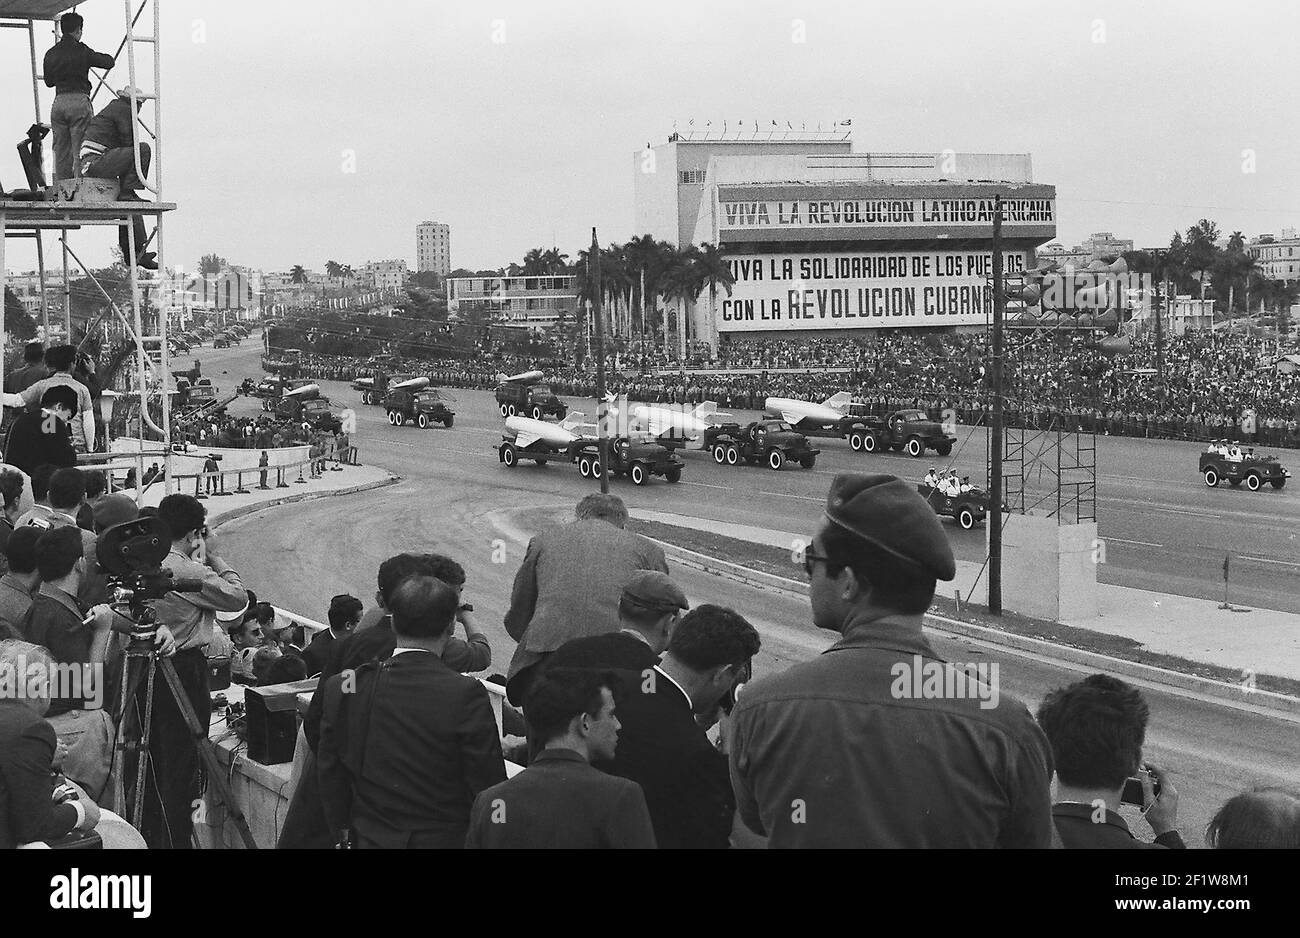 Aviones de combate, multitud en el desfile militar, la Habana (Cuba : Provincia), la Habana (Cuba), Cuba, 1963. De la colección de fotografías de Deena Stryker. () Foto de stock